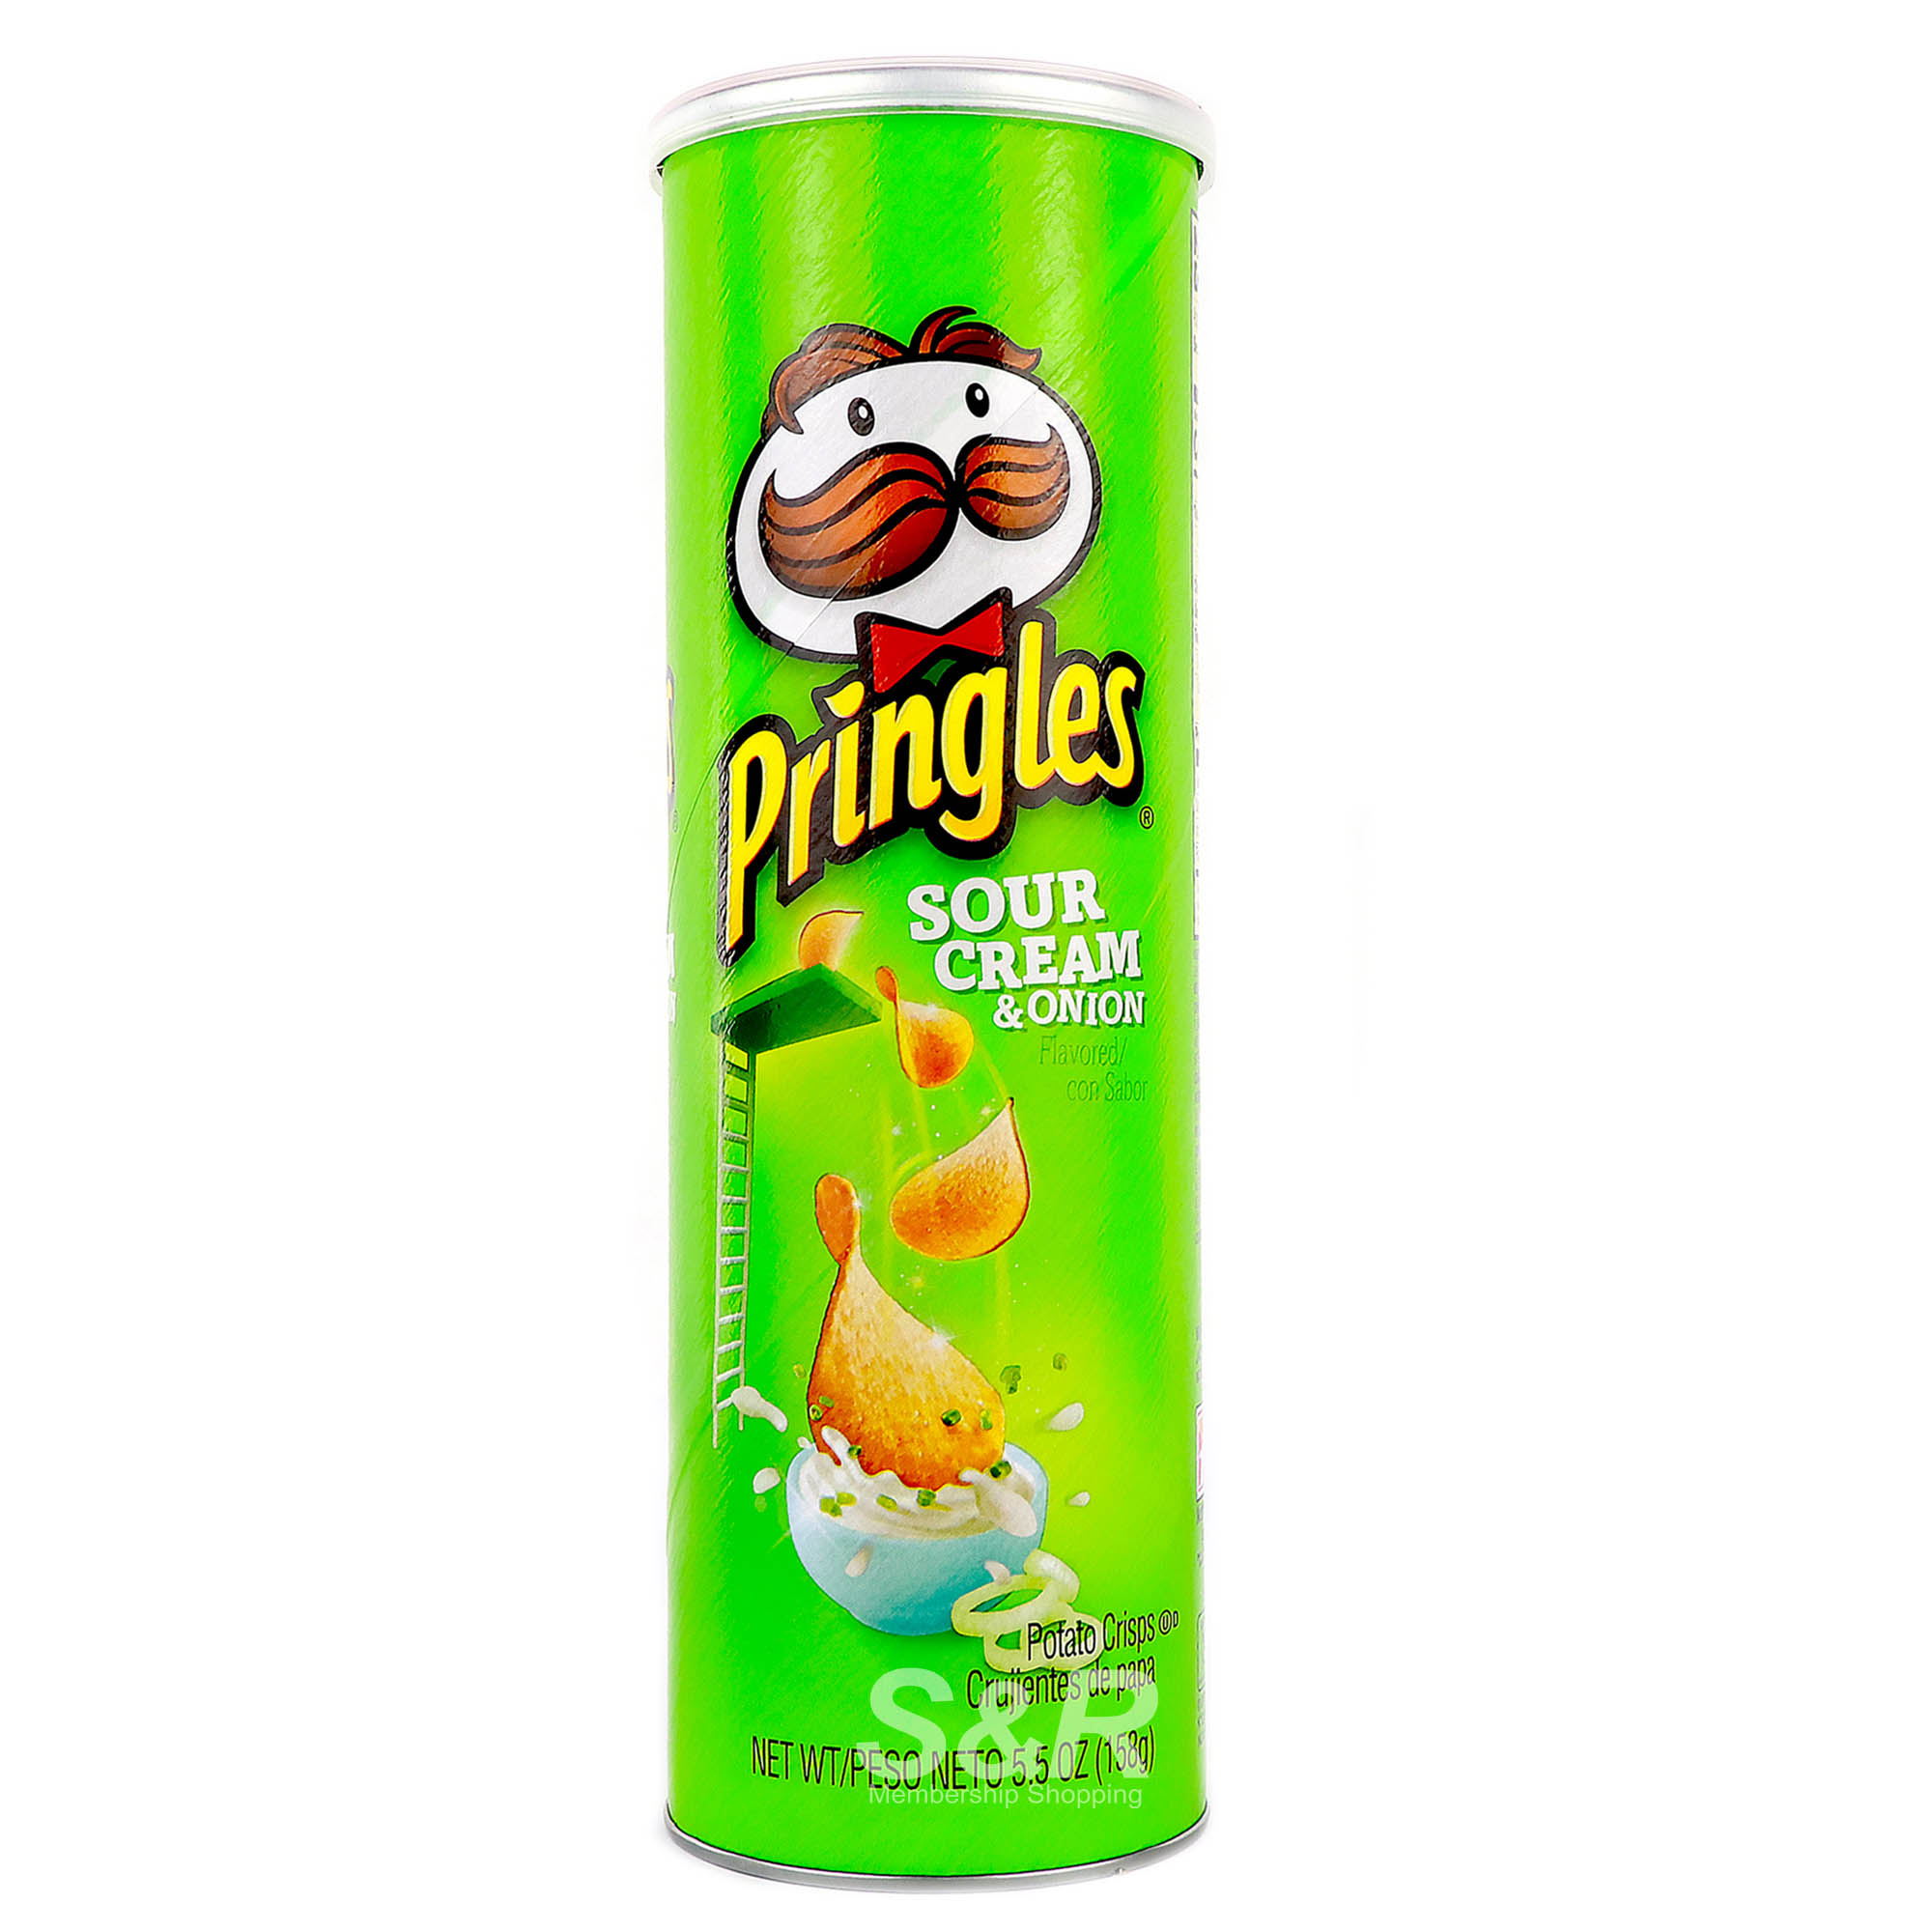 Pringles Sour Cream and Onion Flavored Potato Crisps 158g